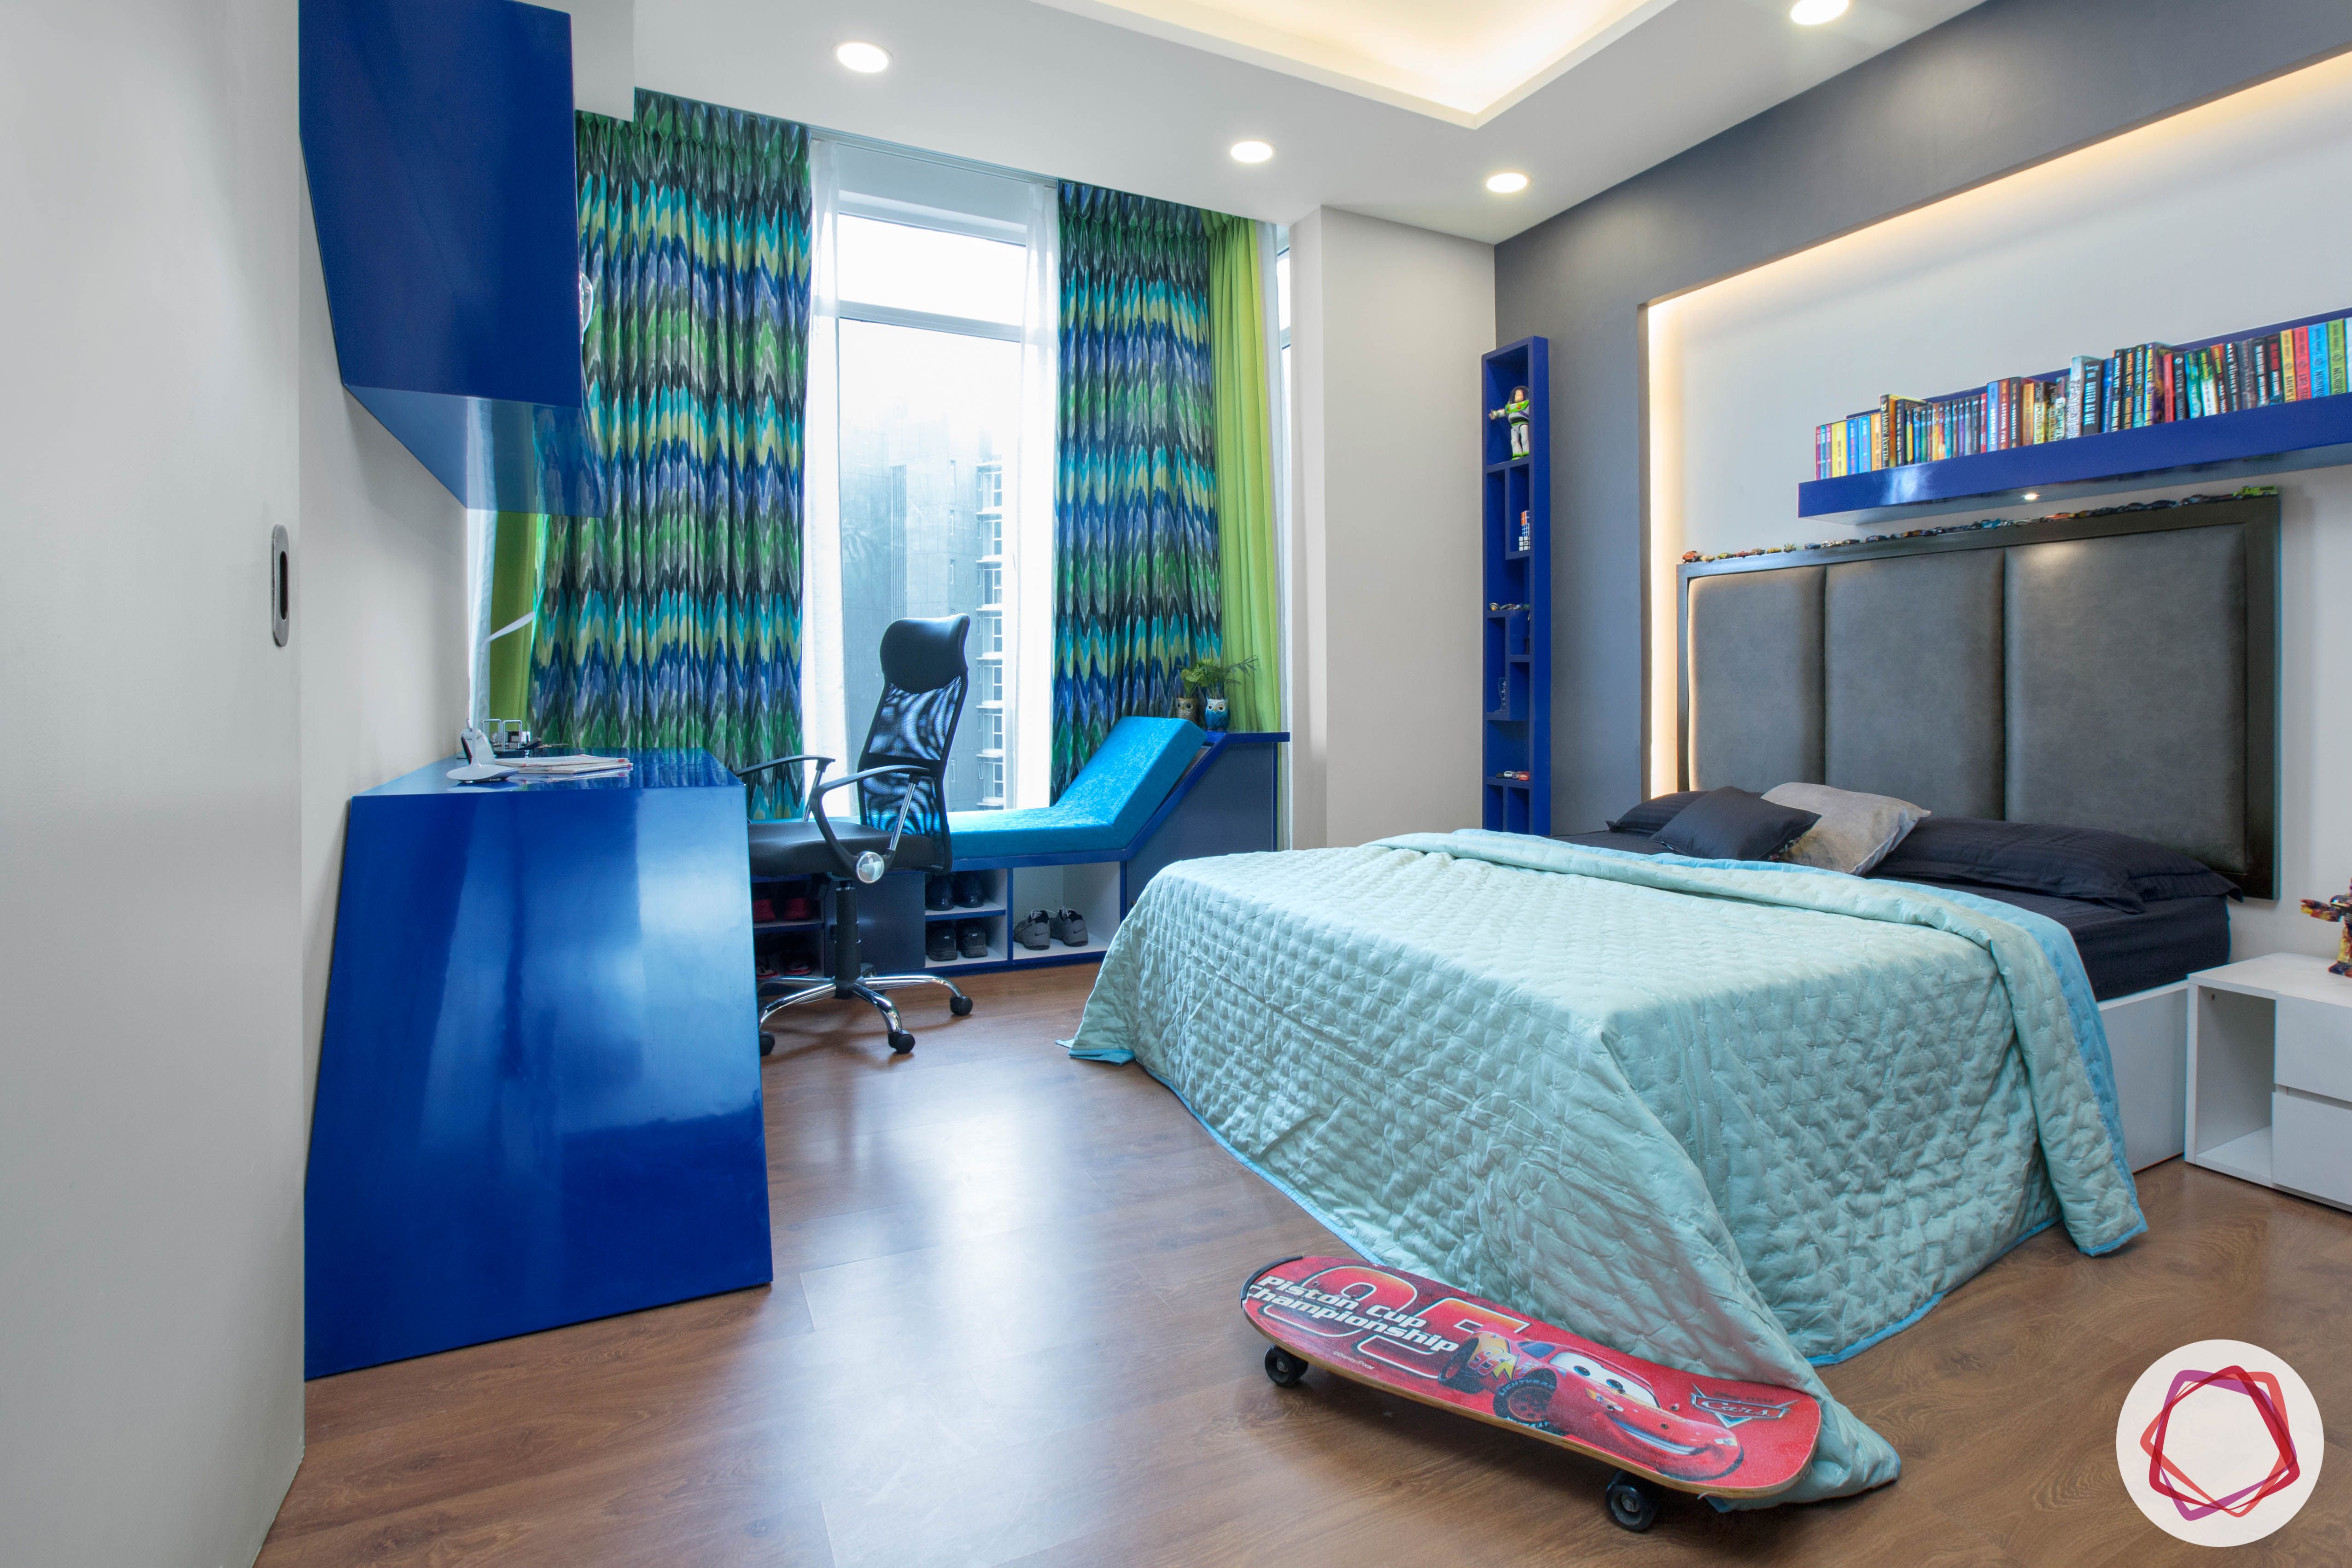 blue-bedroom-designs-study-unit-designs-headboard-designs